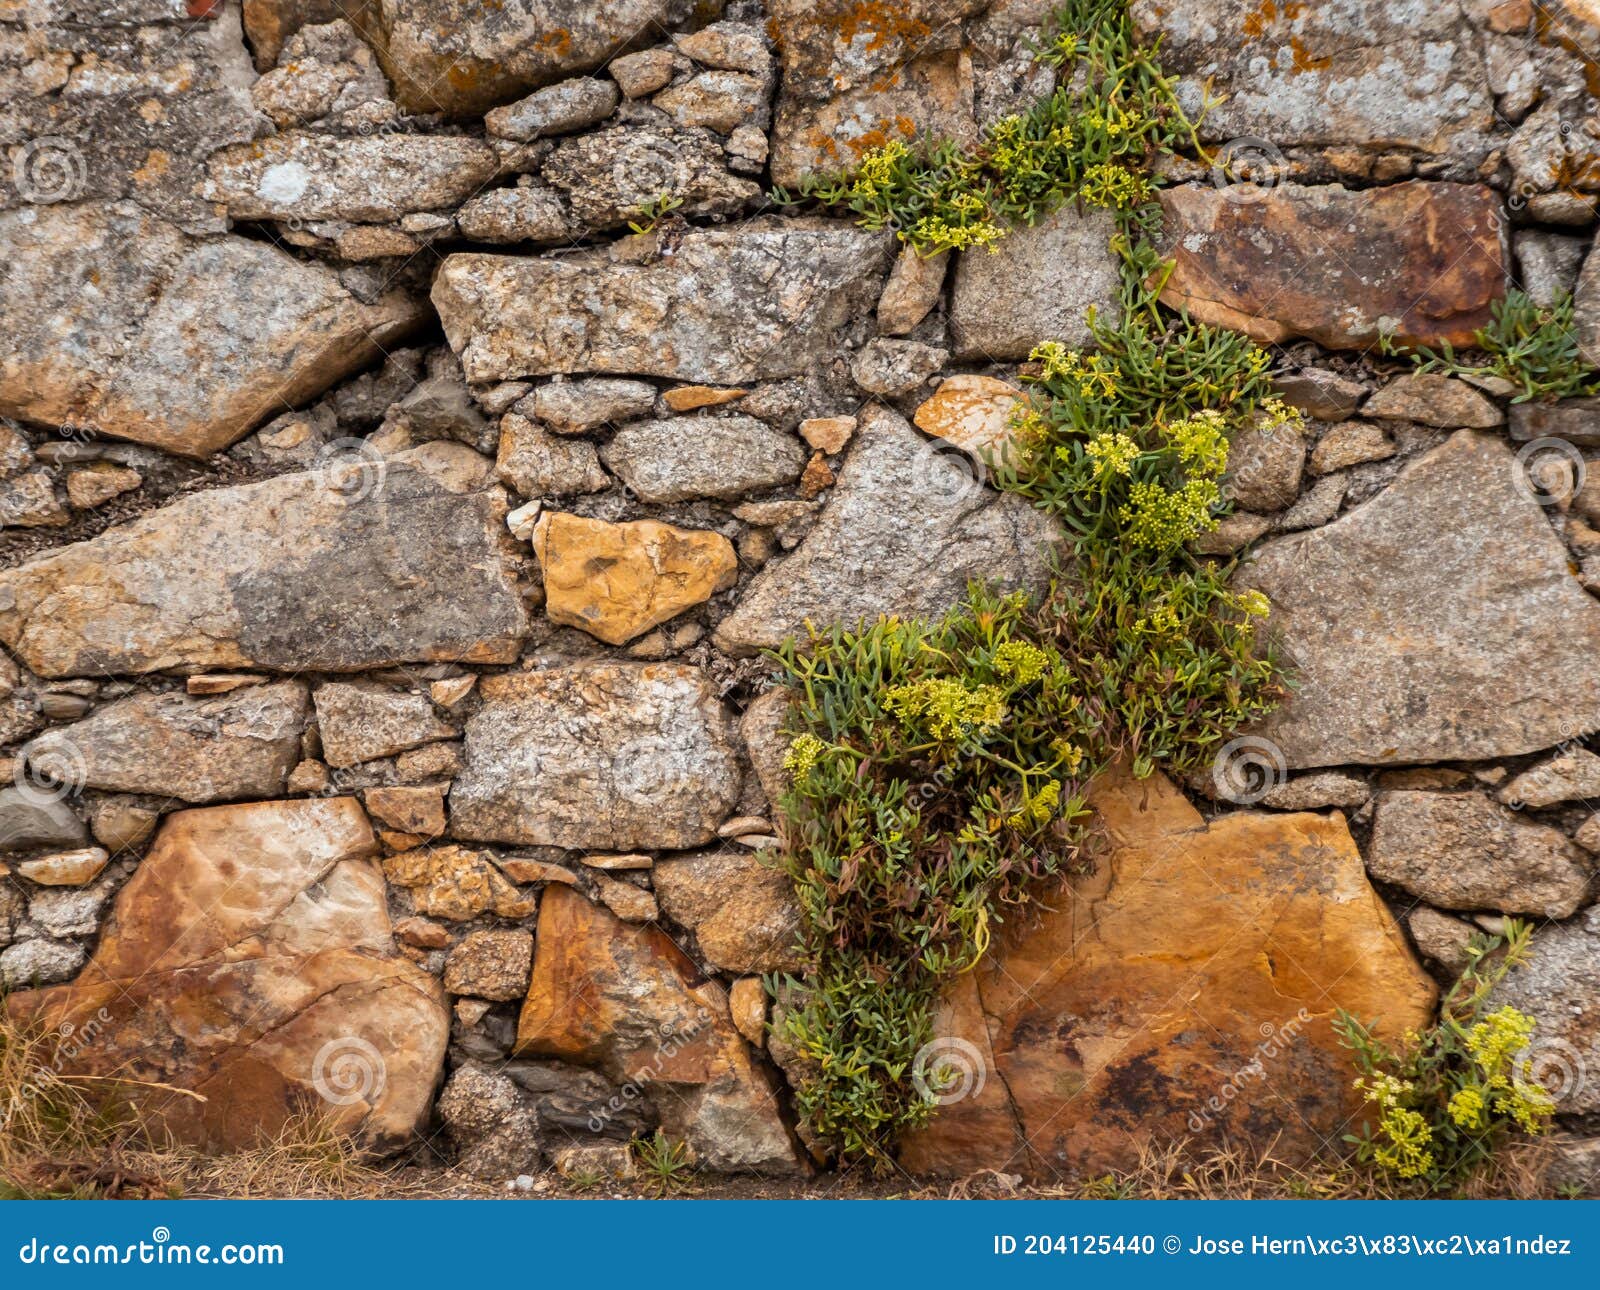 Foto De Stock Imagem Mostrando Um Muro De Pedra Rústica, Com Pontas  Irregulares, Royalty-Free